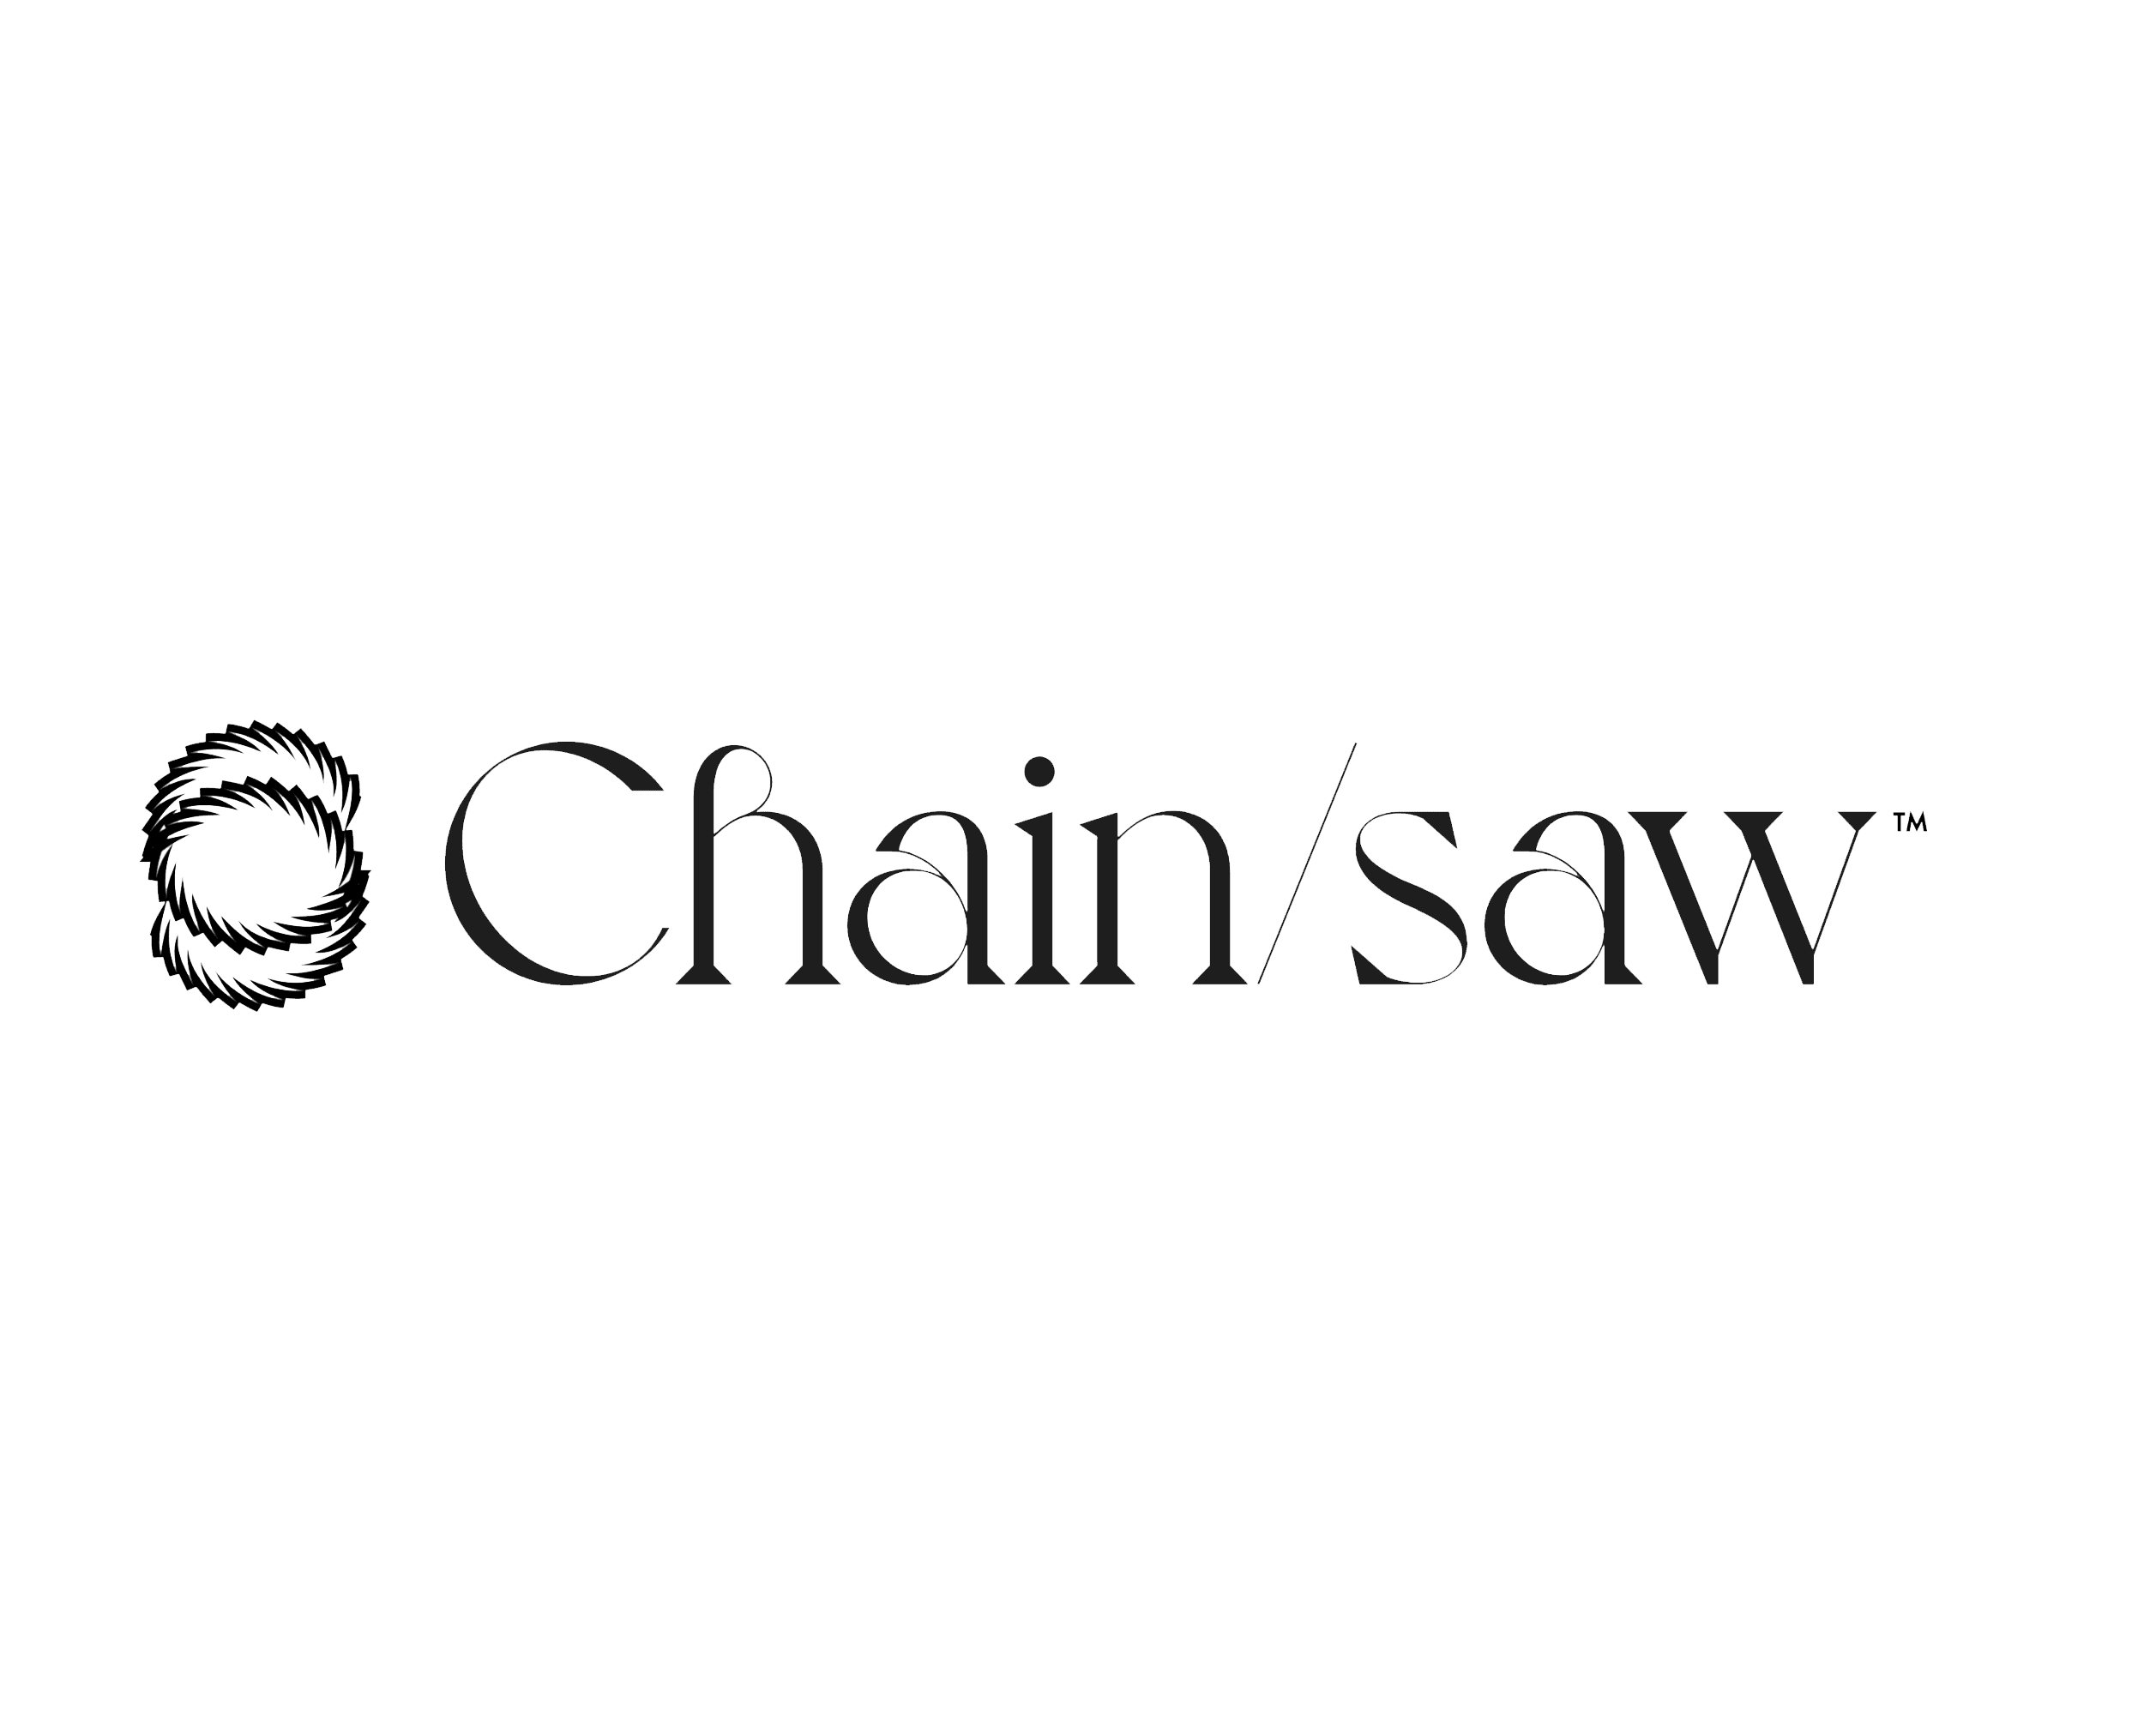 ChainSaw 横幅